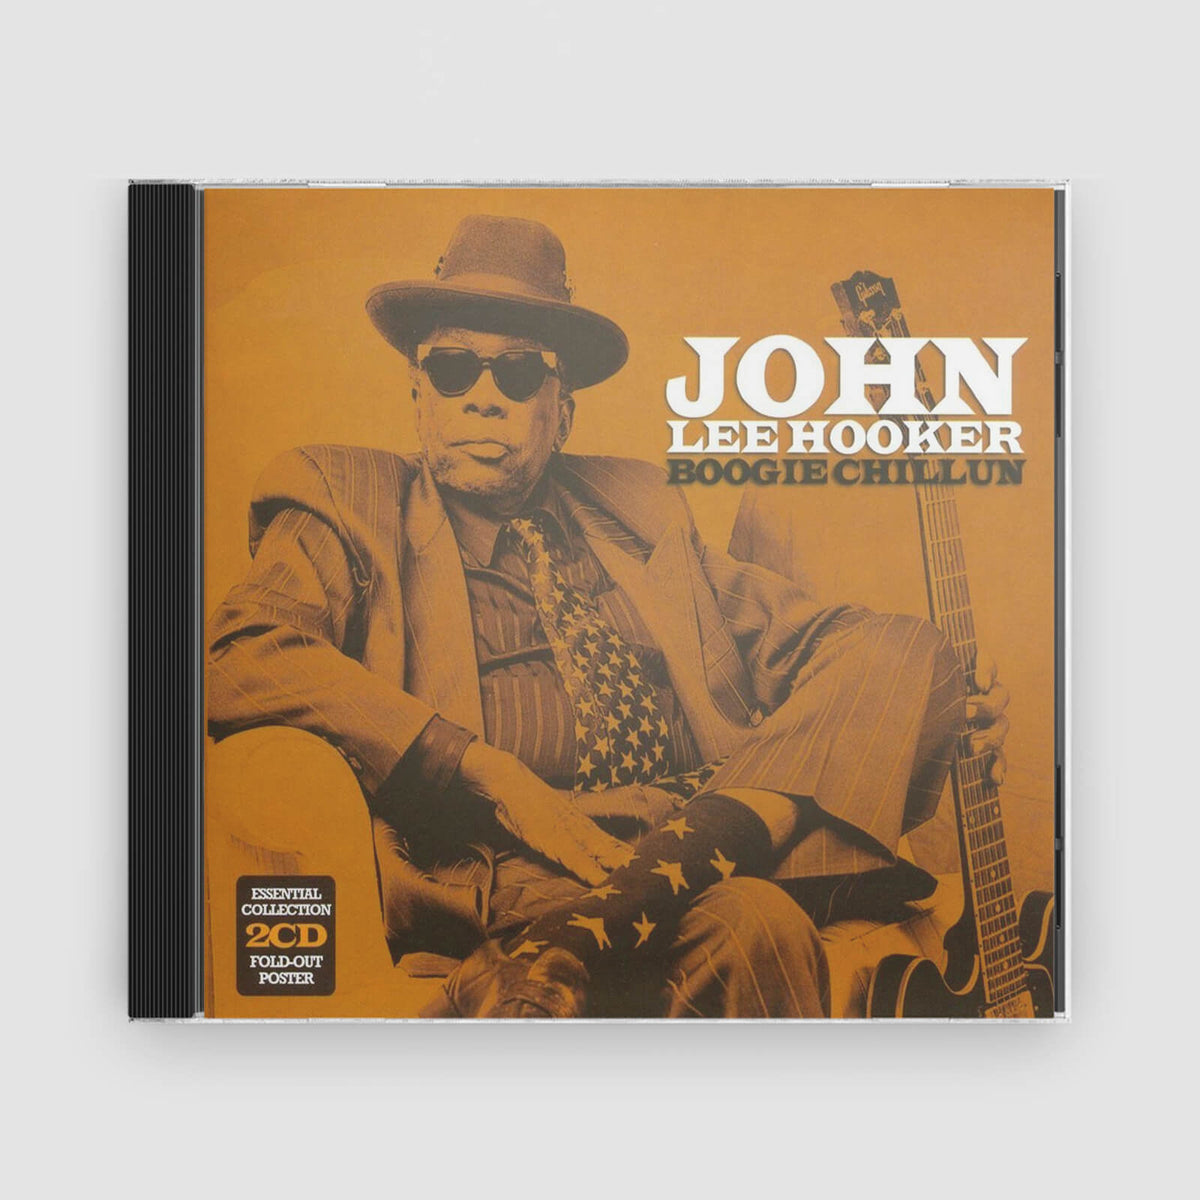 John Lee Hooker : Boogie Chillun